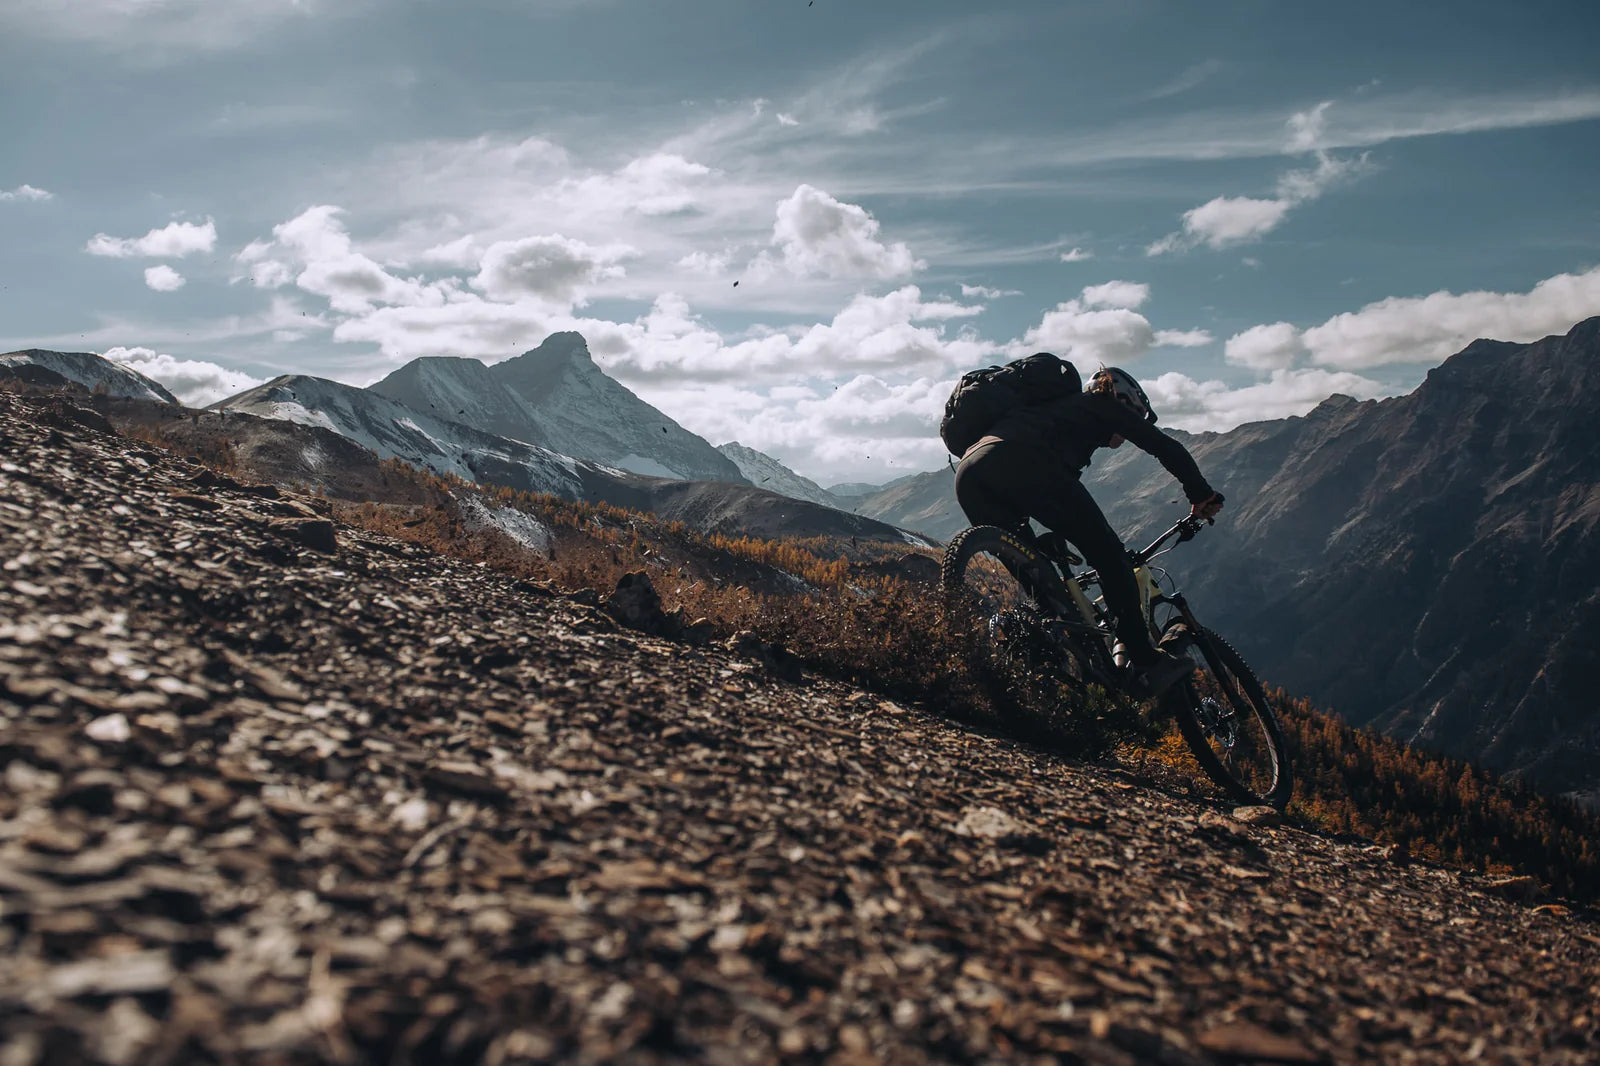 Sam Schultz riding his Instinct on alpine terrains